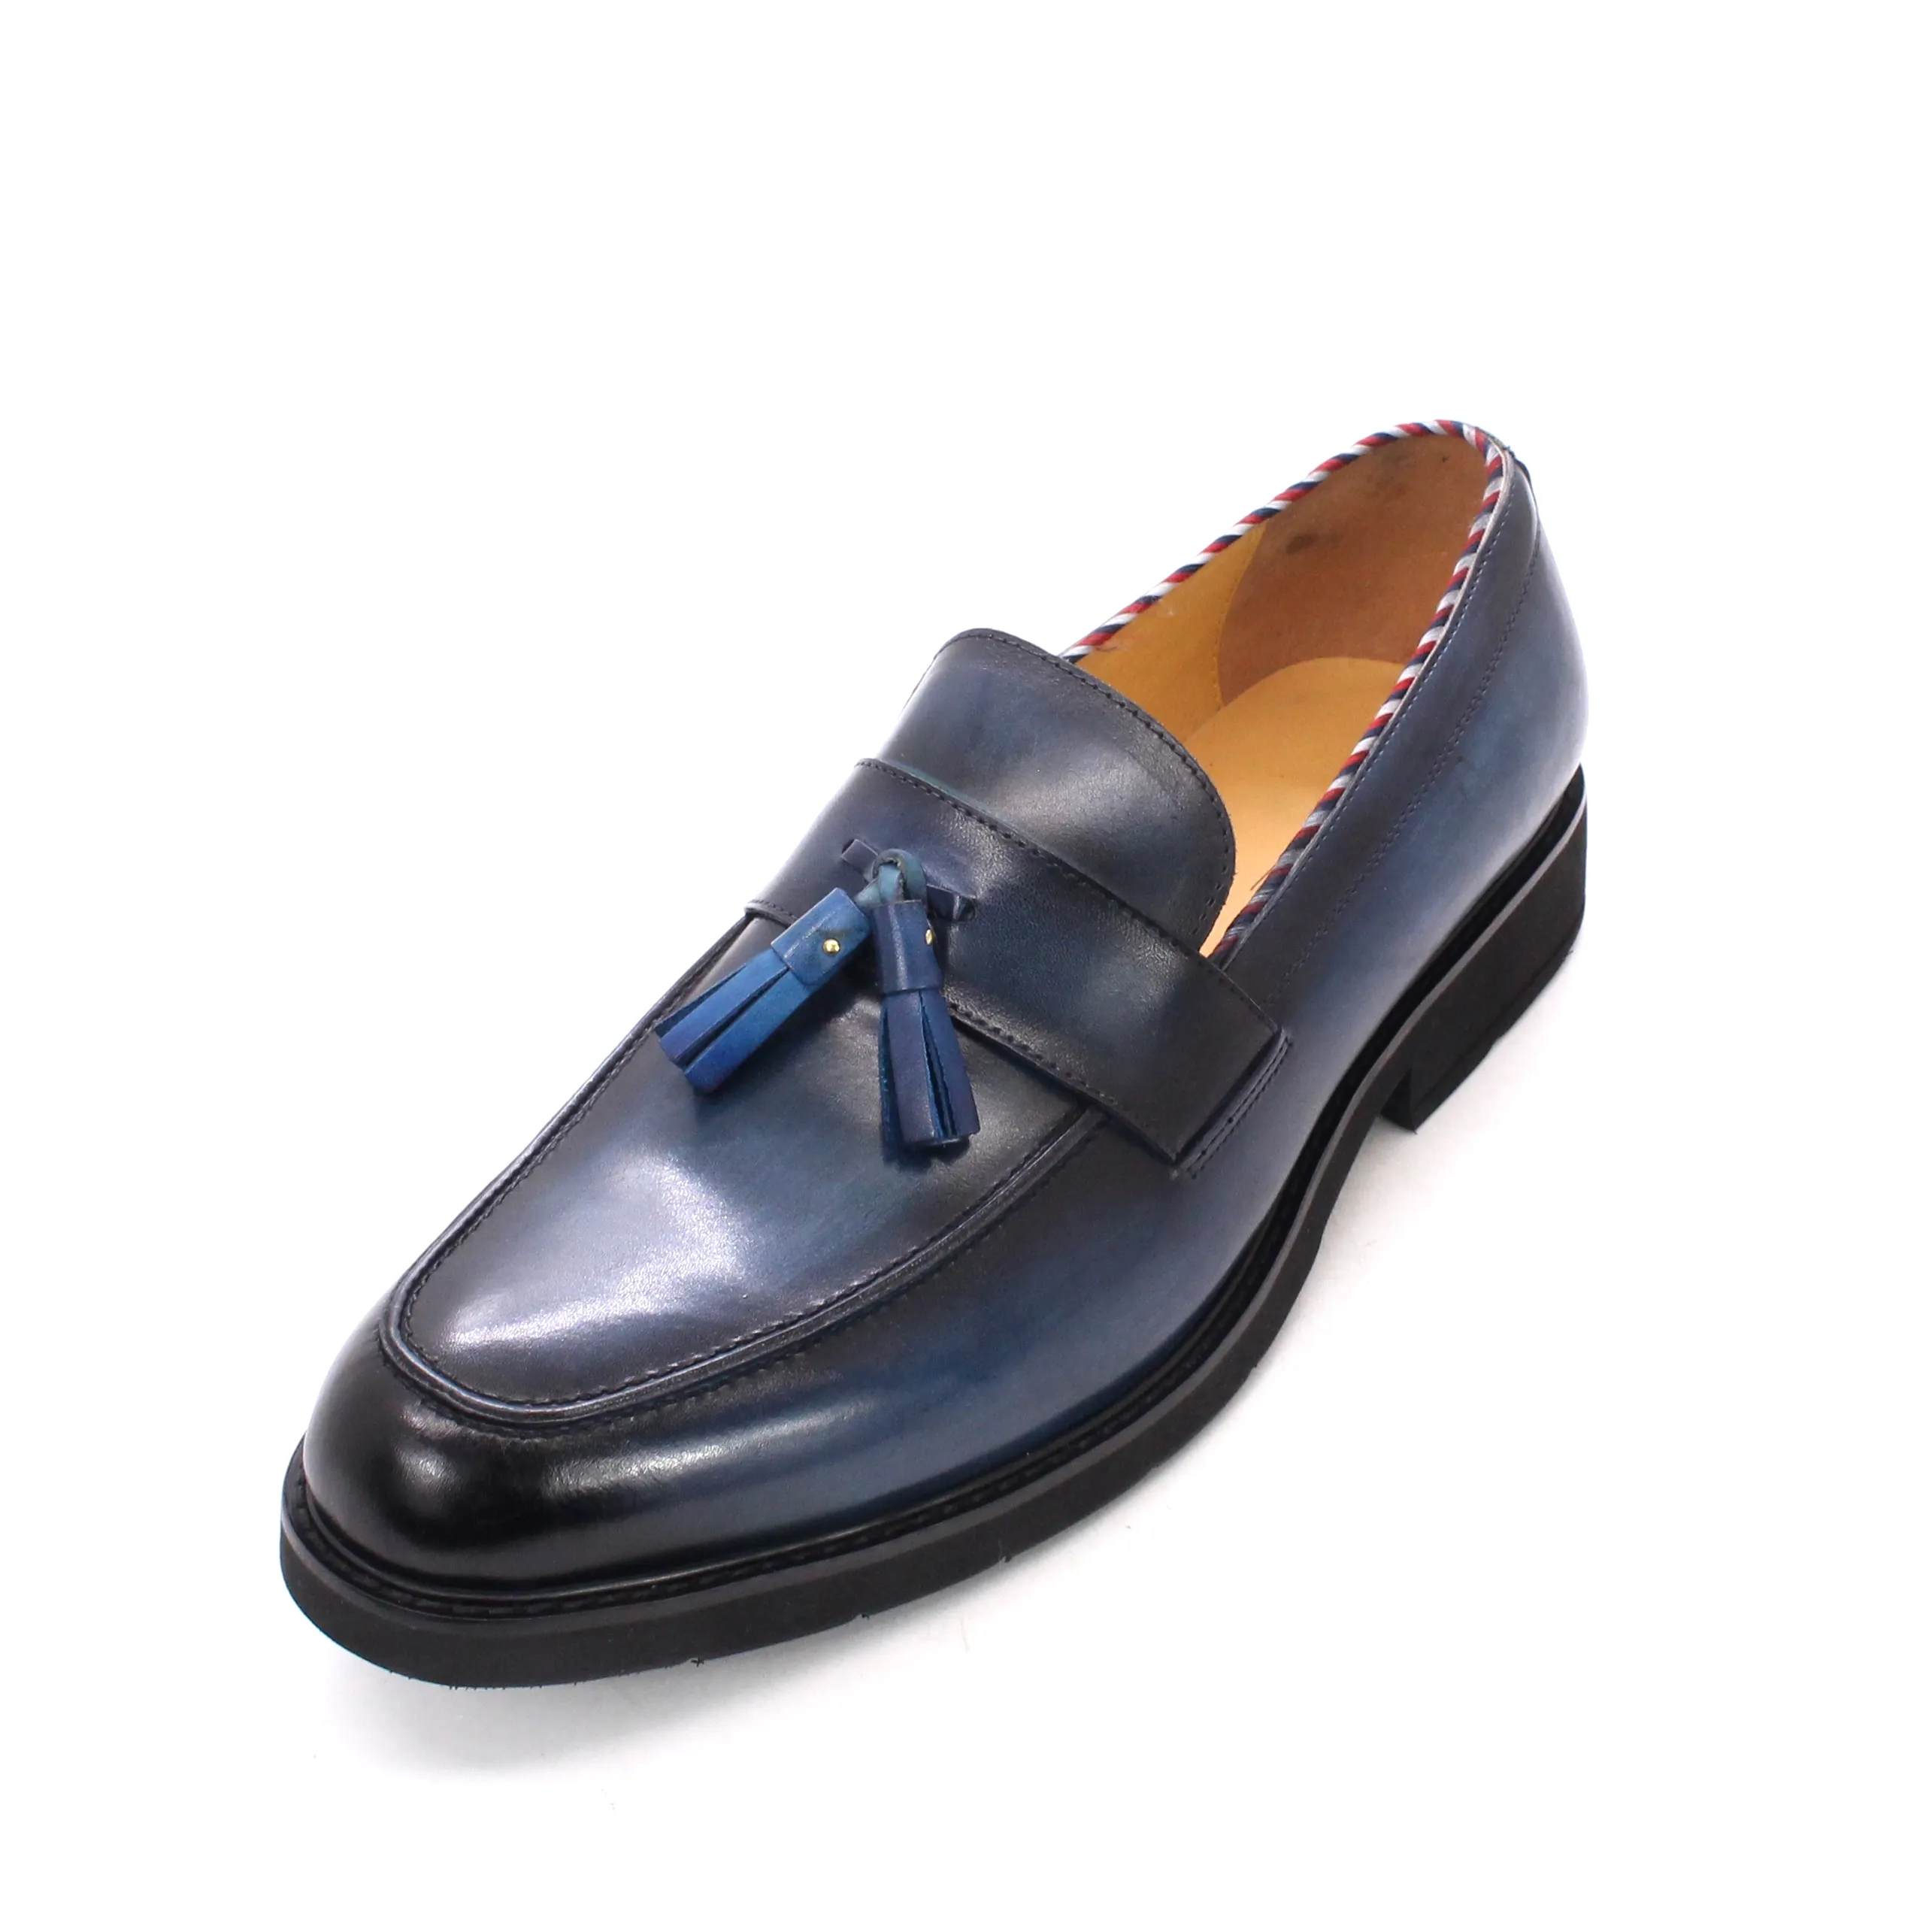 Zapatos informales azules hechos a mano para hombre, mocasines de cuero genuino con aumento de altura, a la moda, sencillos